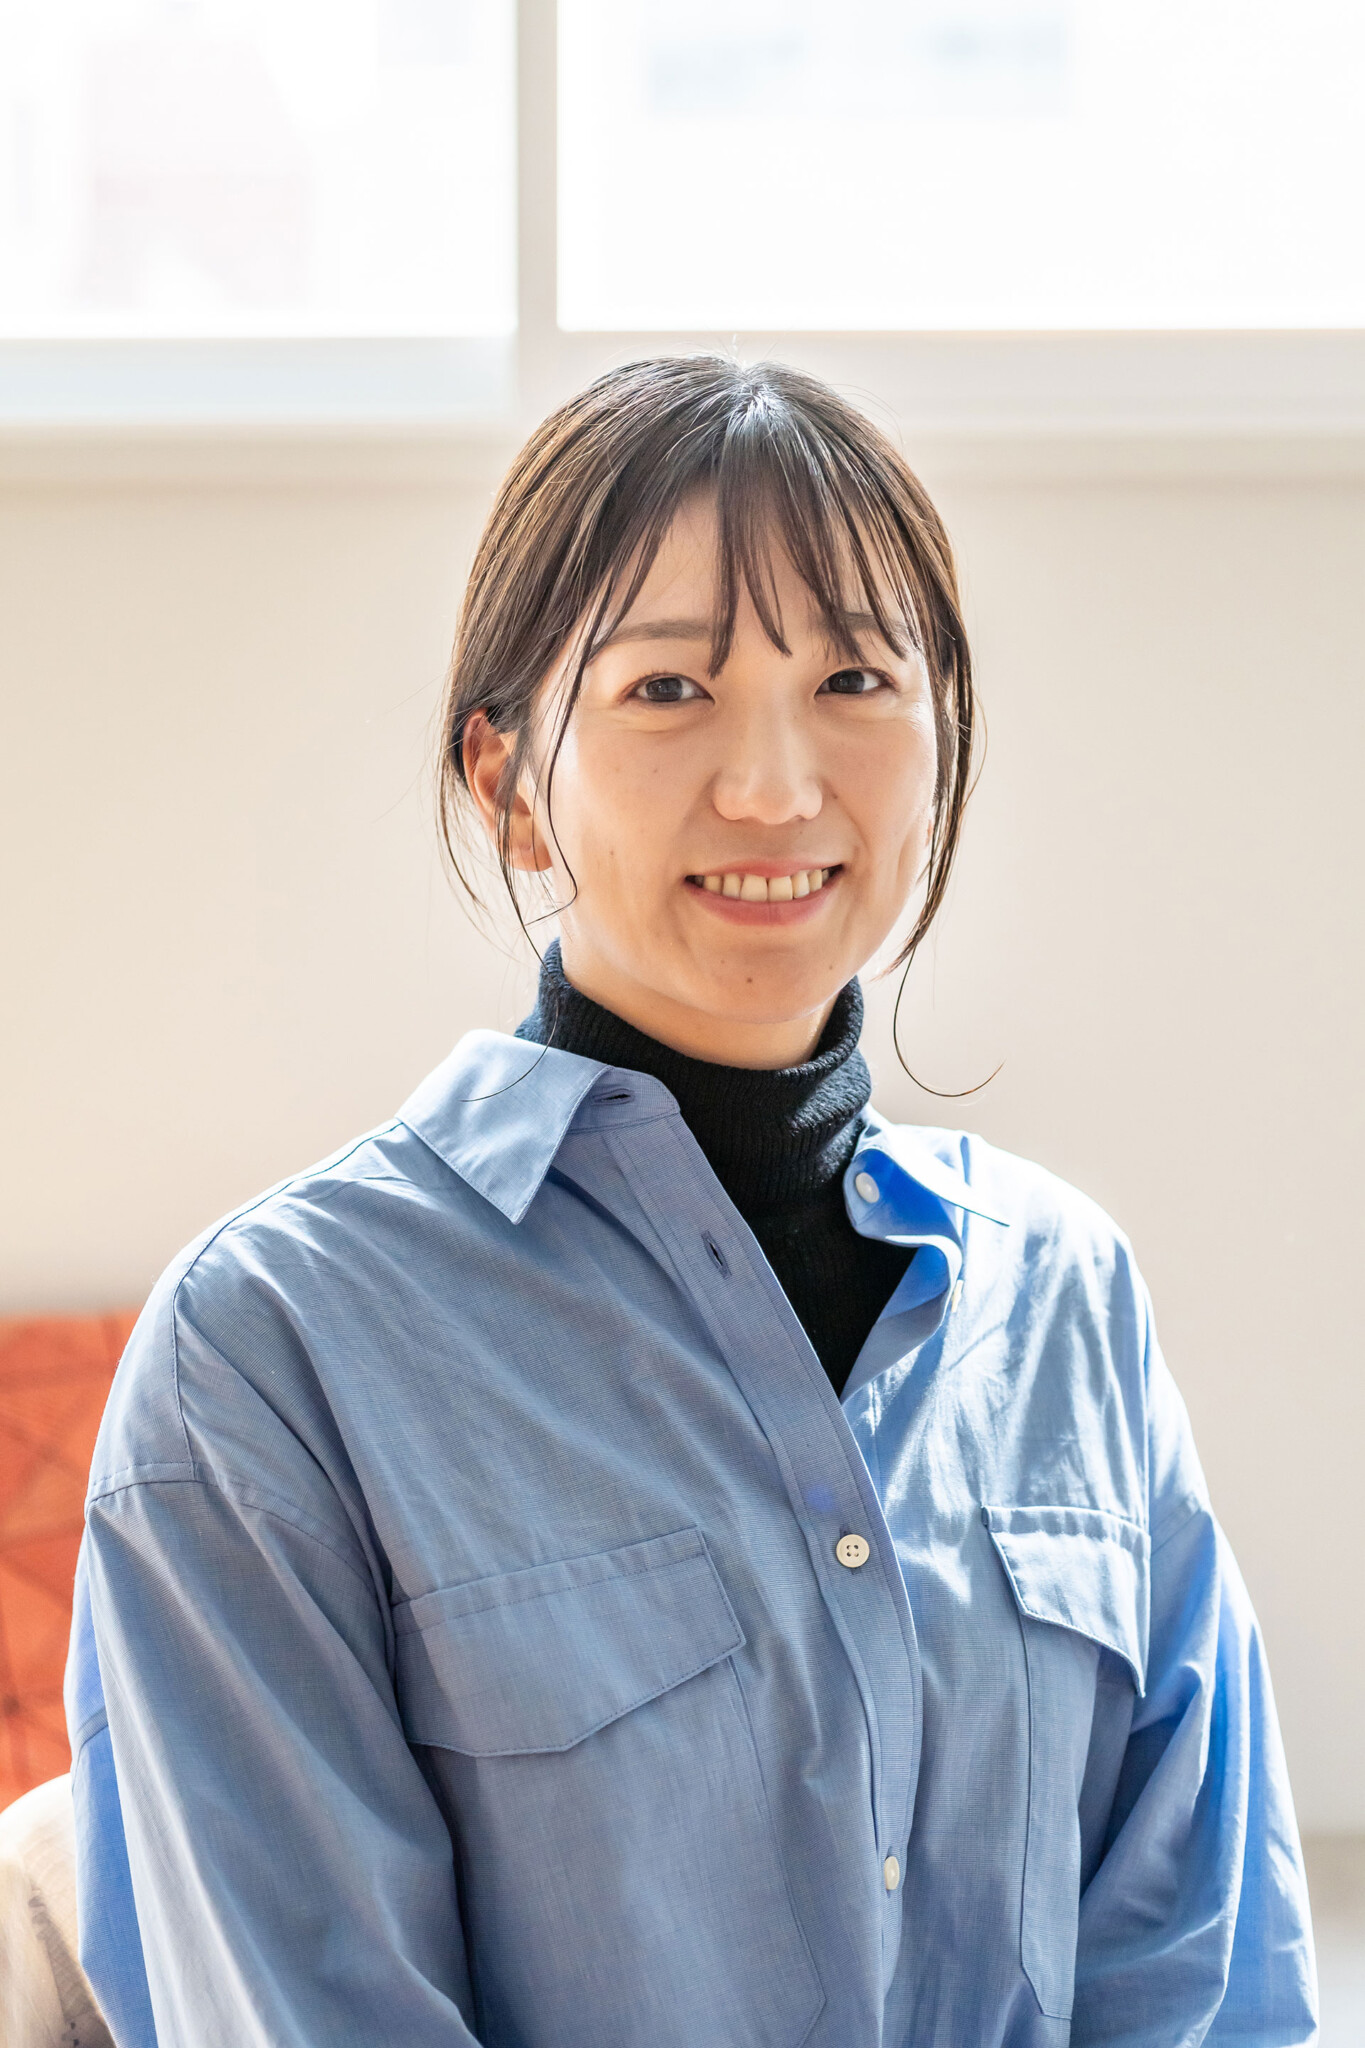 インテリアコーディネート課の小林千夏さん。子育て家庭など、暮らしにフォーカスしつつ、デザイン性の高いインテリアを提案してくれる。